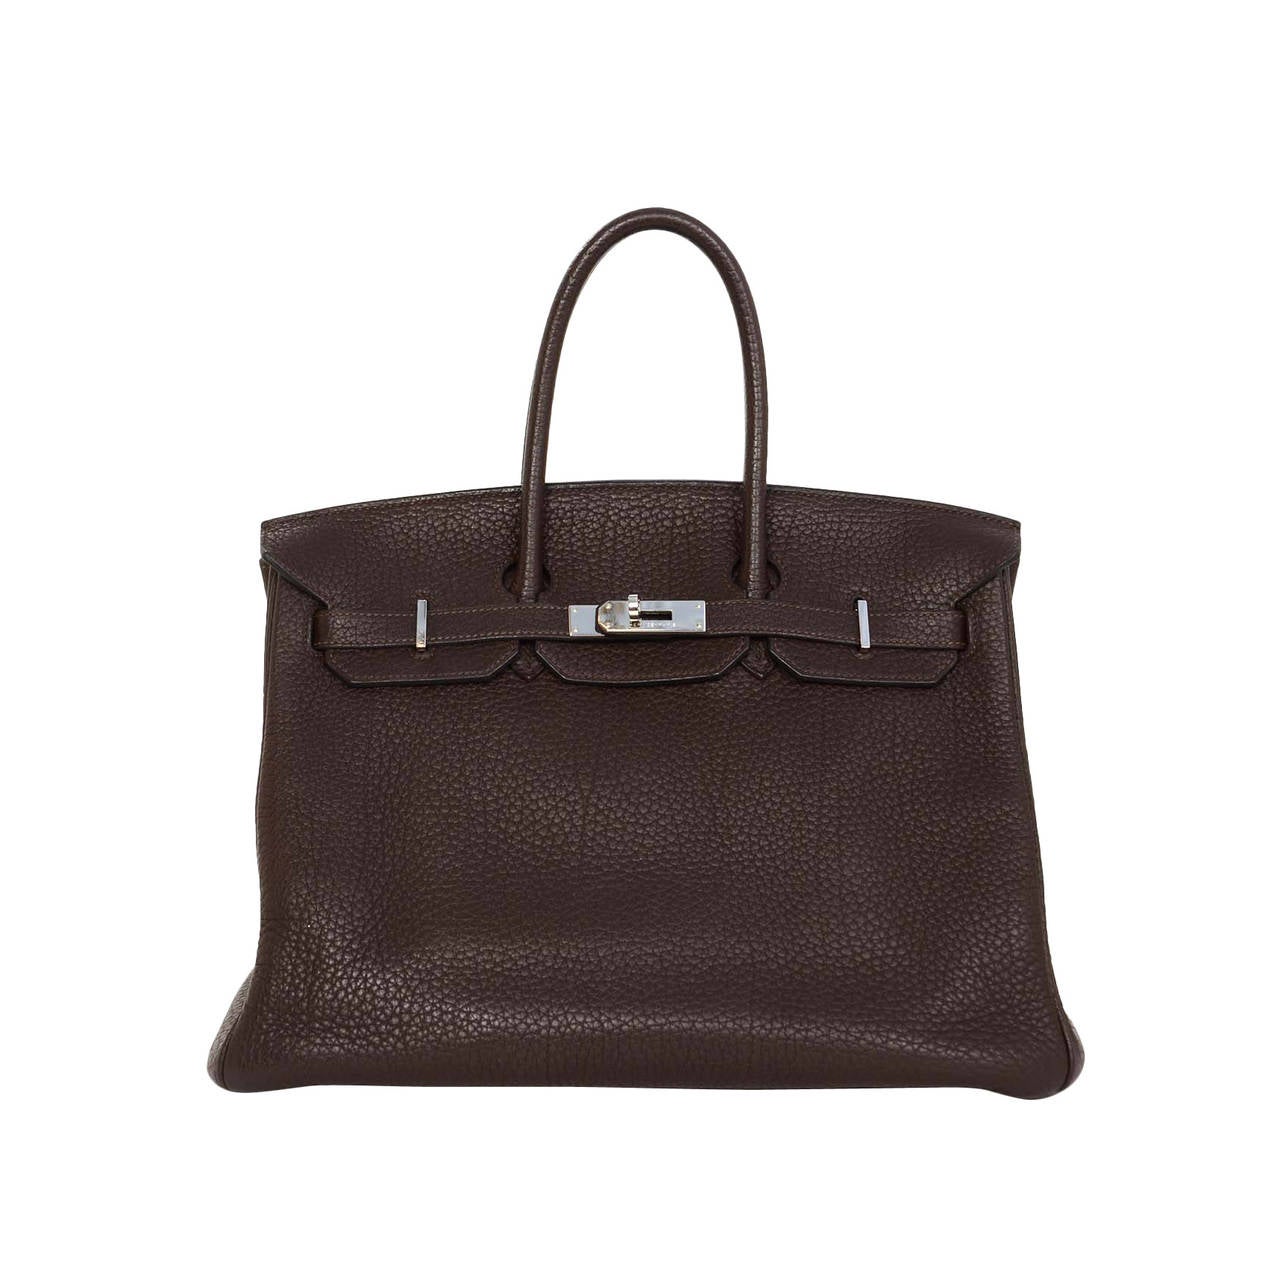 HERMES 2009 Brown Togo Leather 35cm Birkin Bag PHW For Sale at 1stdibs